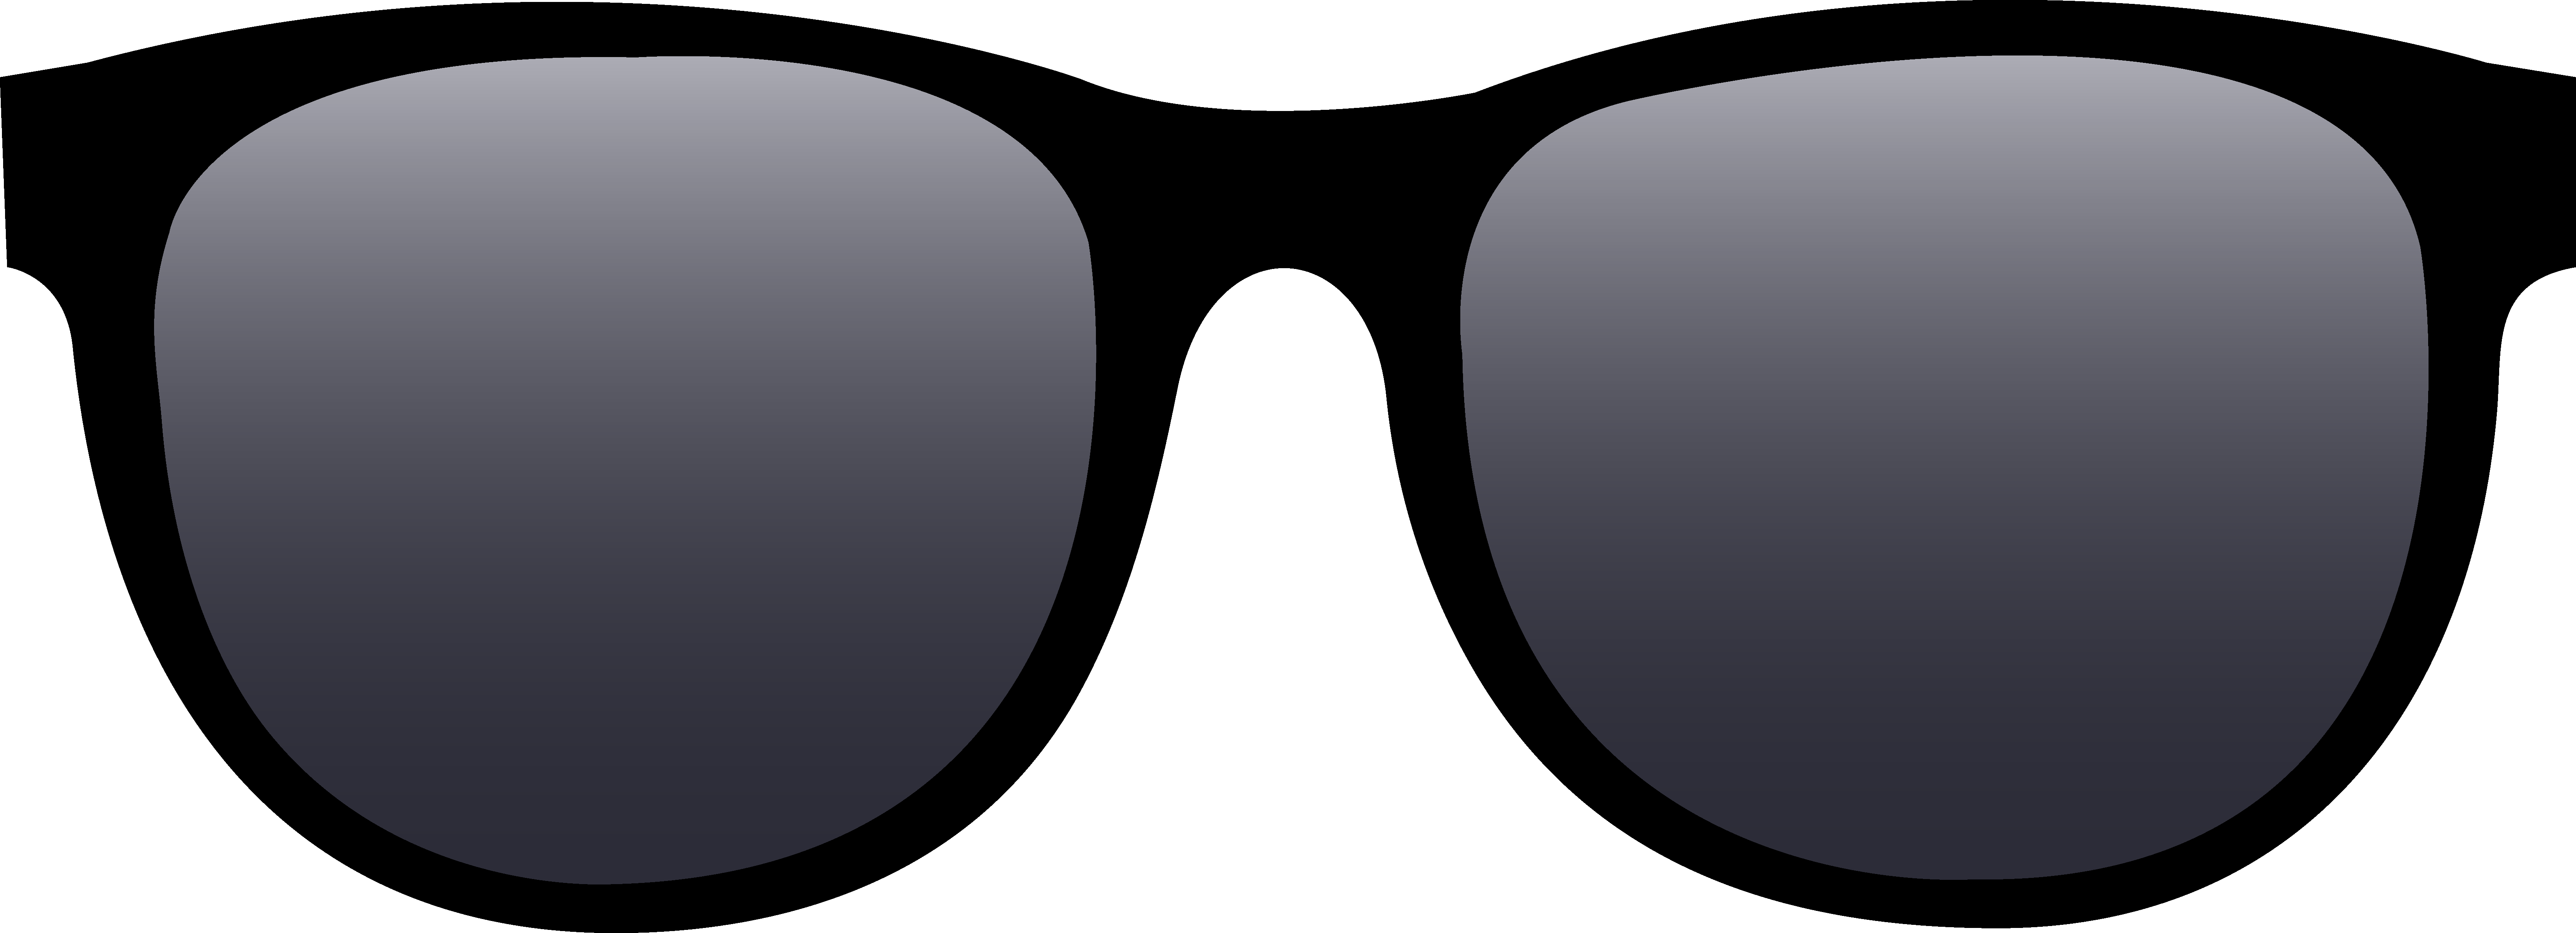 Sunglasses glasses clip art 3 - Clip Art Glasses